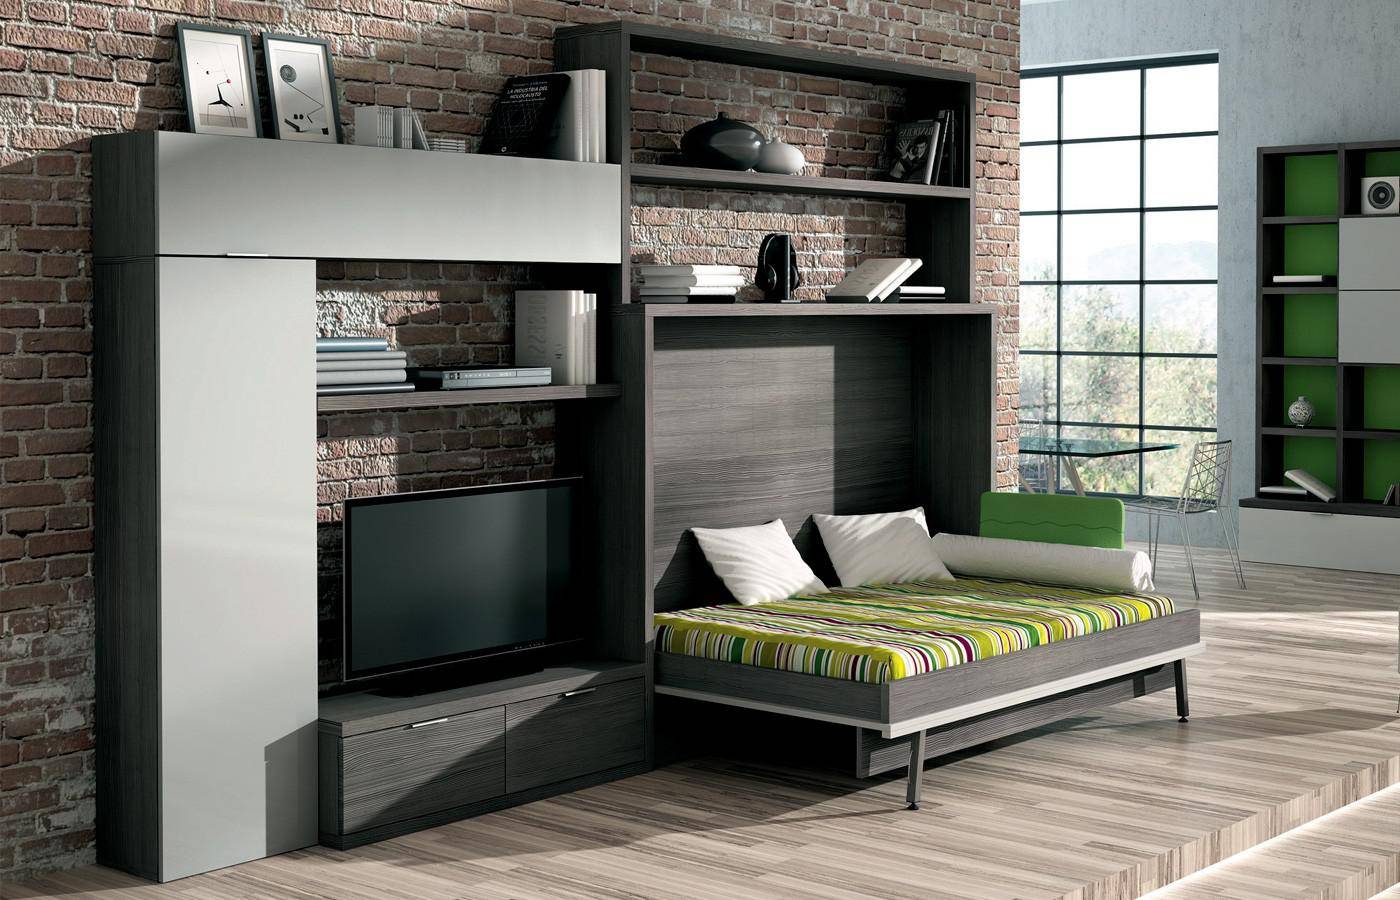 Мебель-трансформер для маленькой квартиры: кровать, диван, шкаф, комод, стол. 127 фото функциональных вариантов удобной мебели